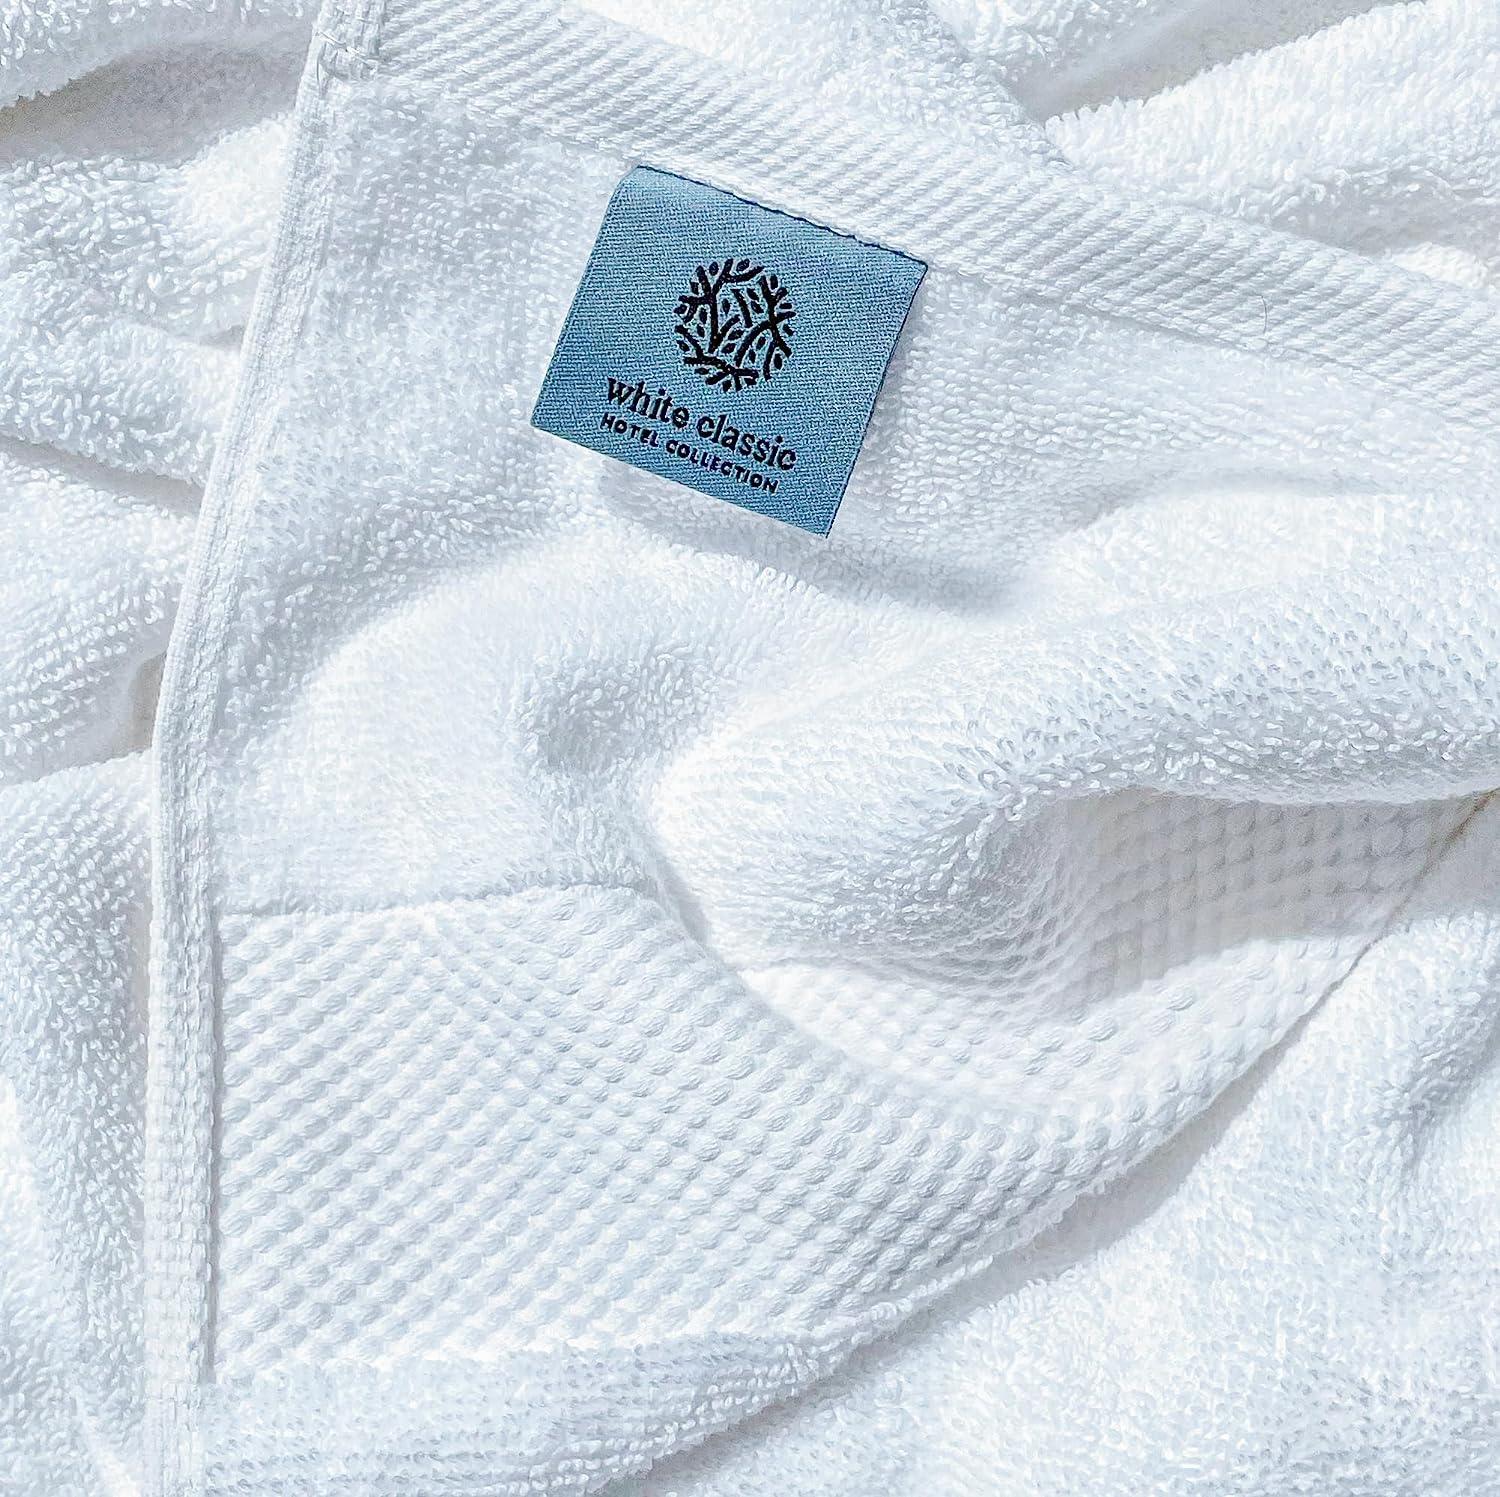  SUPERIOR Juego de toallas faciales de algodón ecológico de 12  piezas, pequeñas, toallas de secado rápido para cara, spa, centro  turístico, hotel, manos, ducha, baño de invitados, hogar, Airbnb, artículos  esenciales